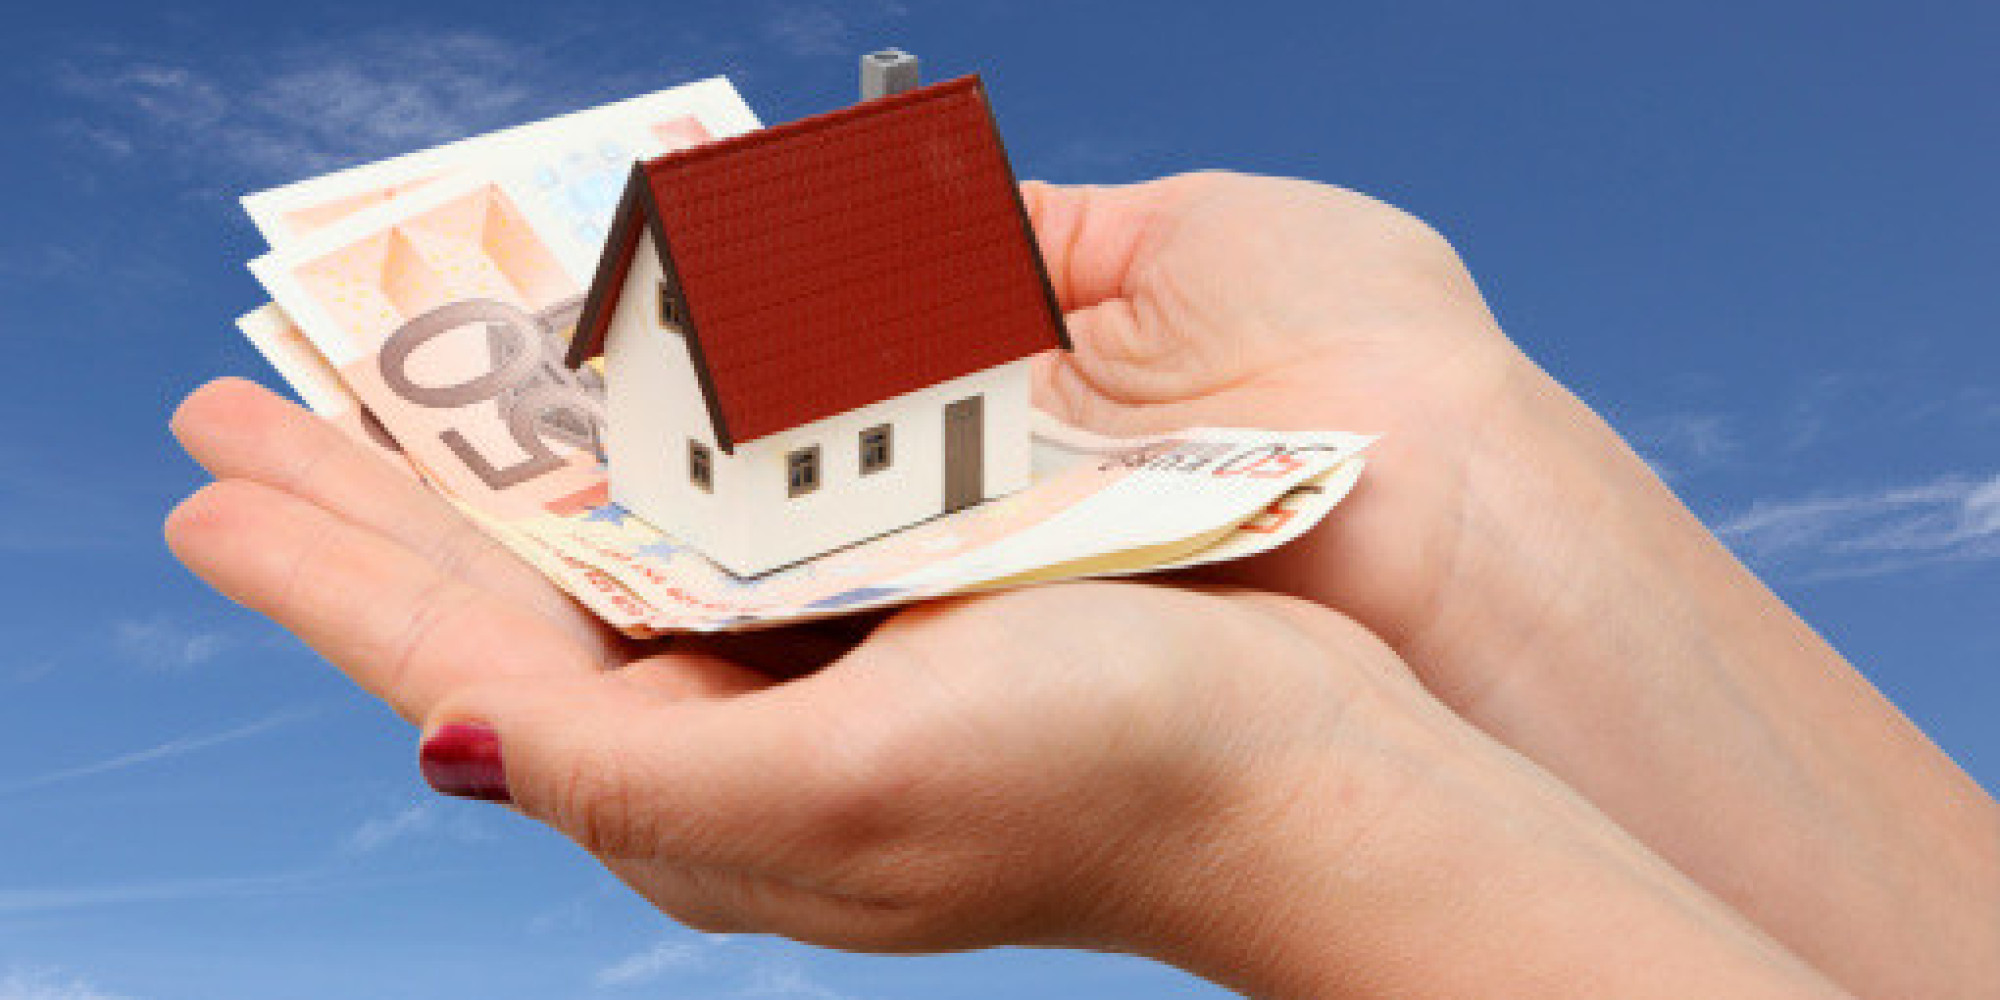 Offerte mutui, ecco cosa bisogna sapere per poter scegliere al meglio.